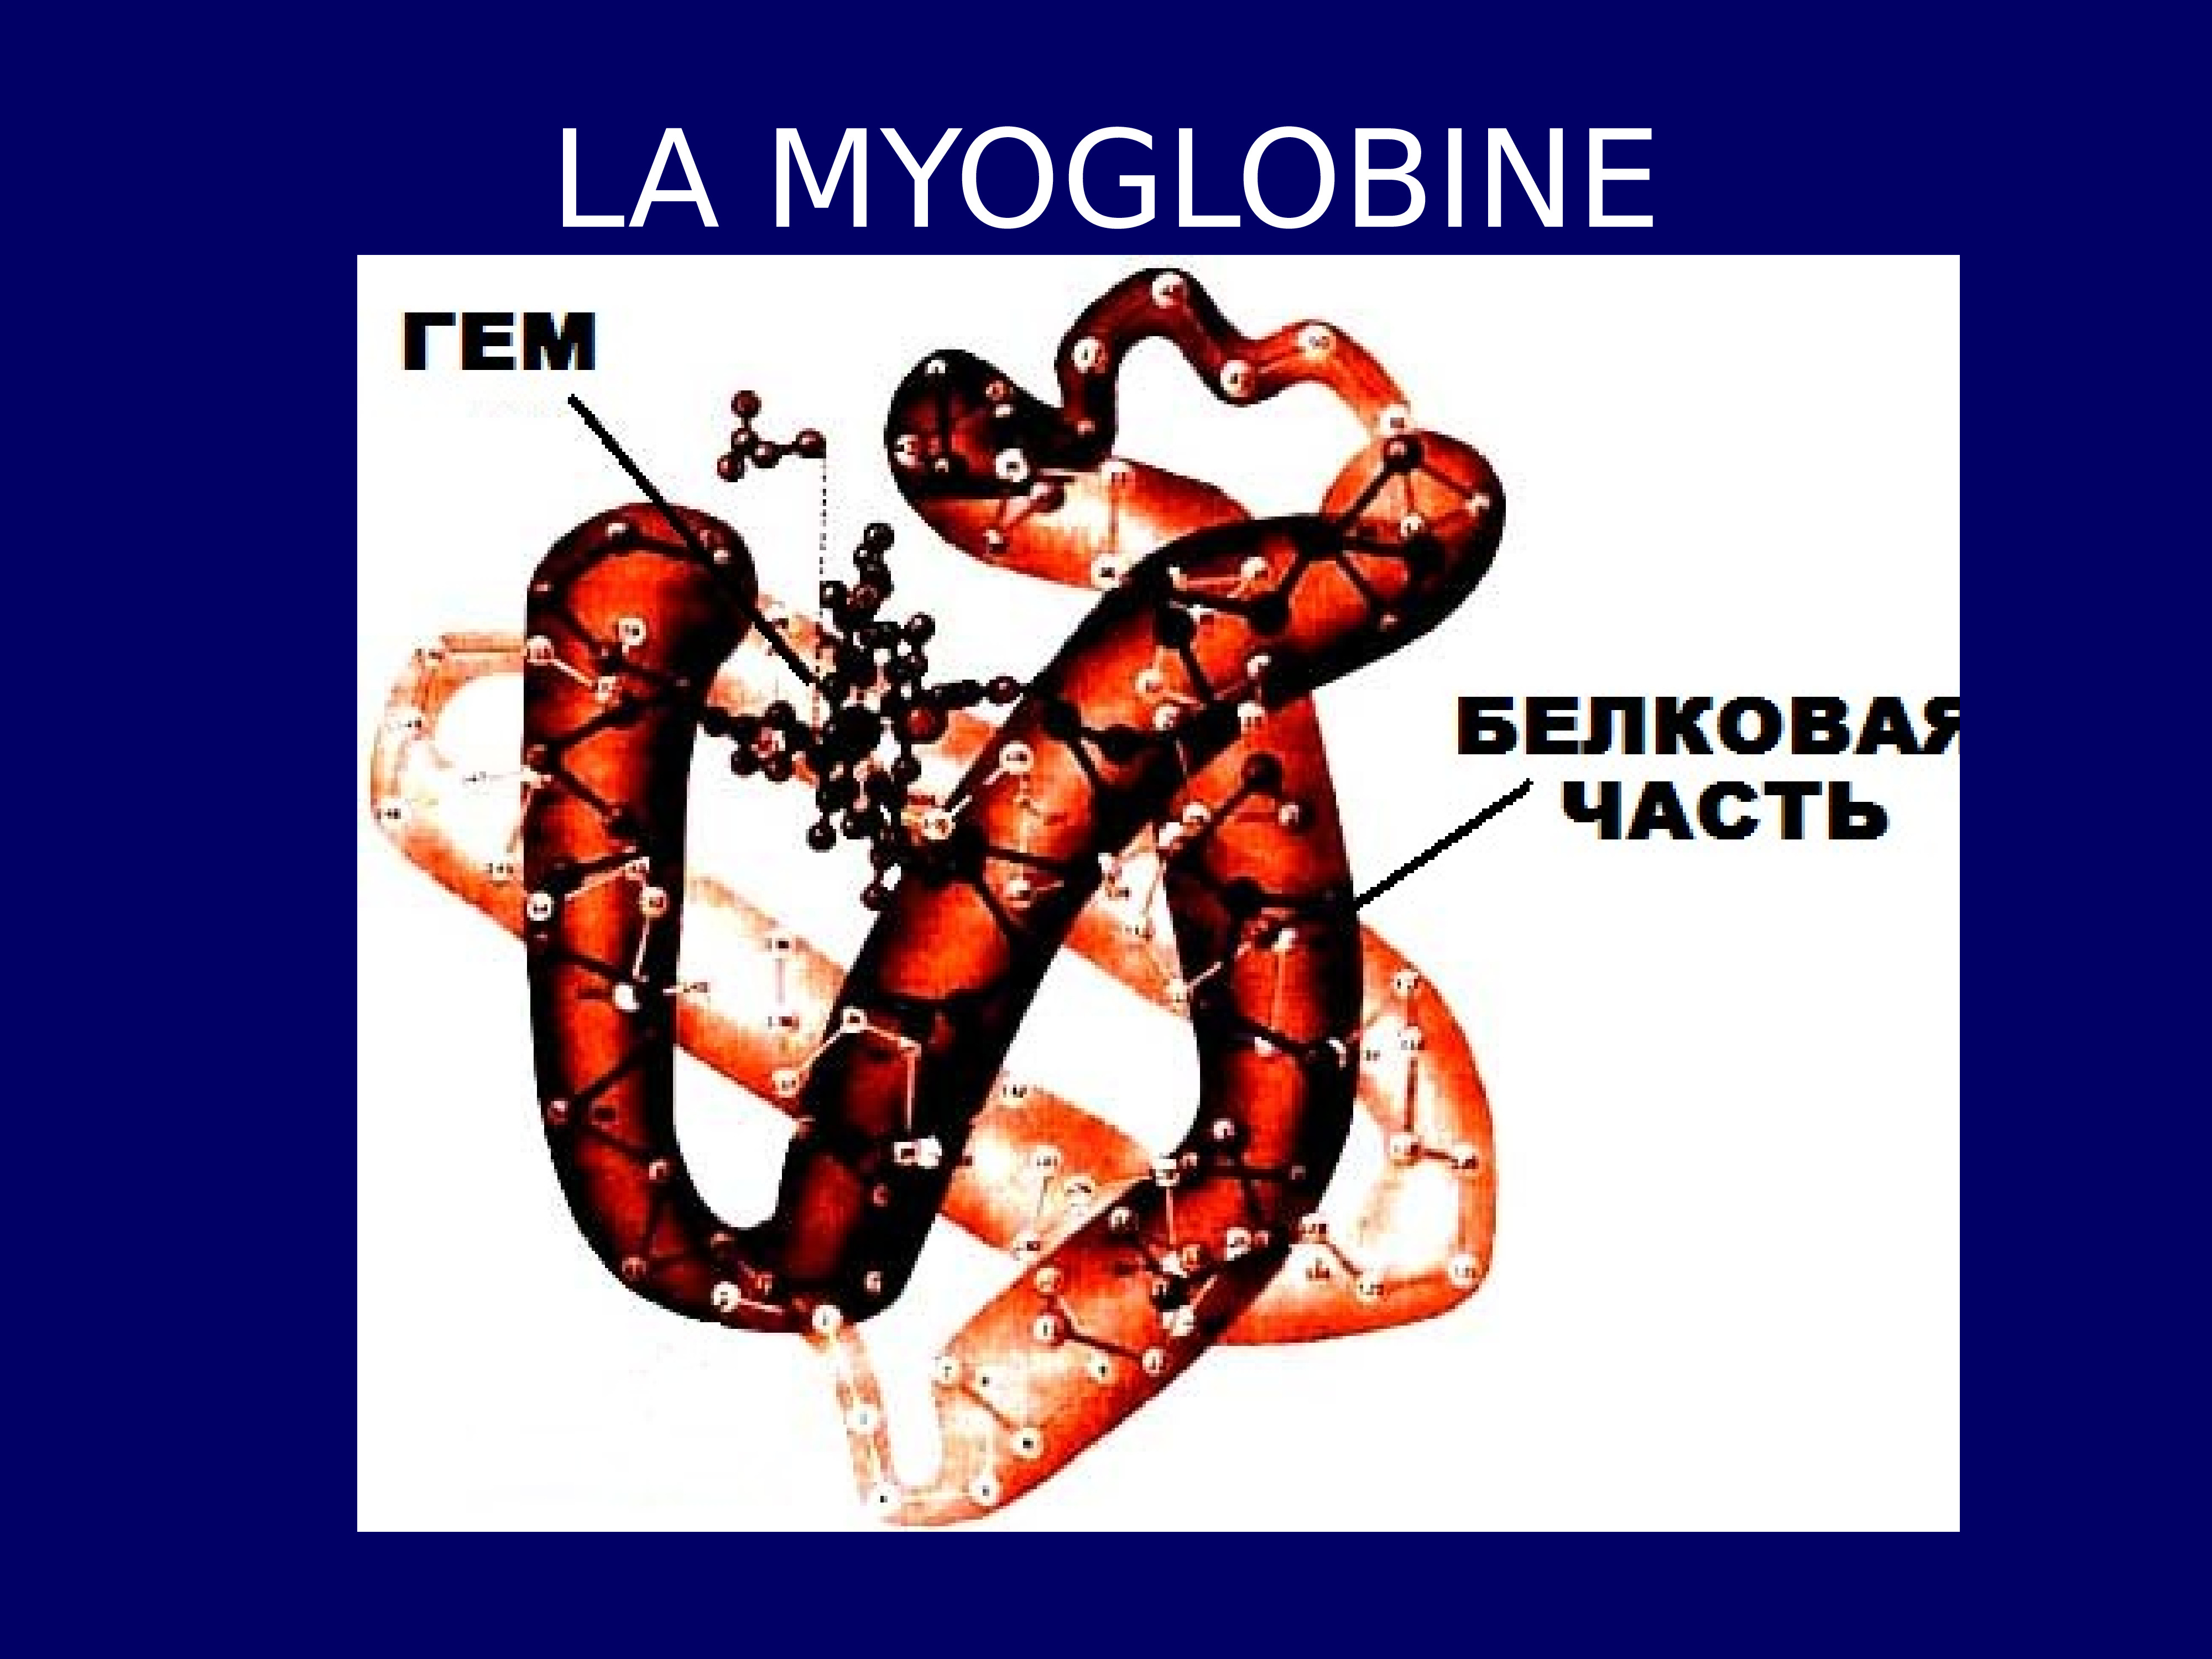 Какова функция миоглобина